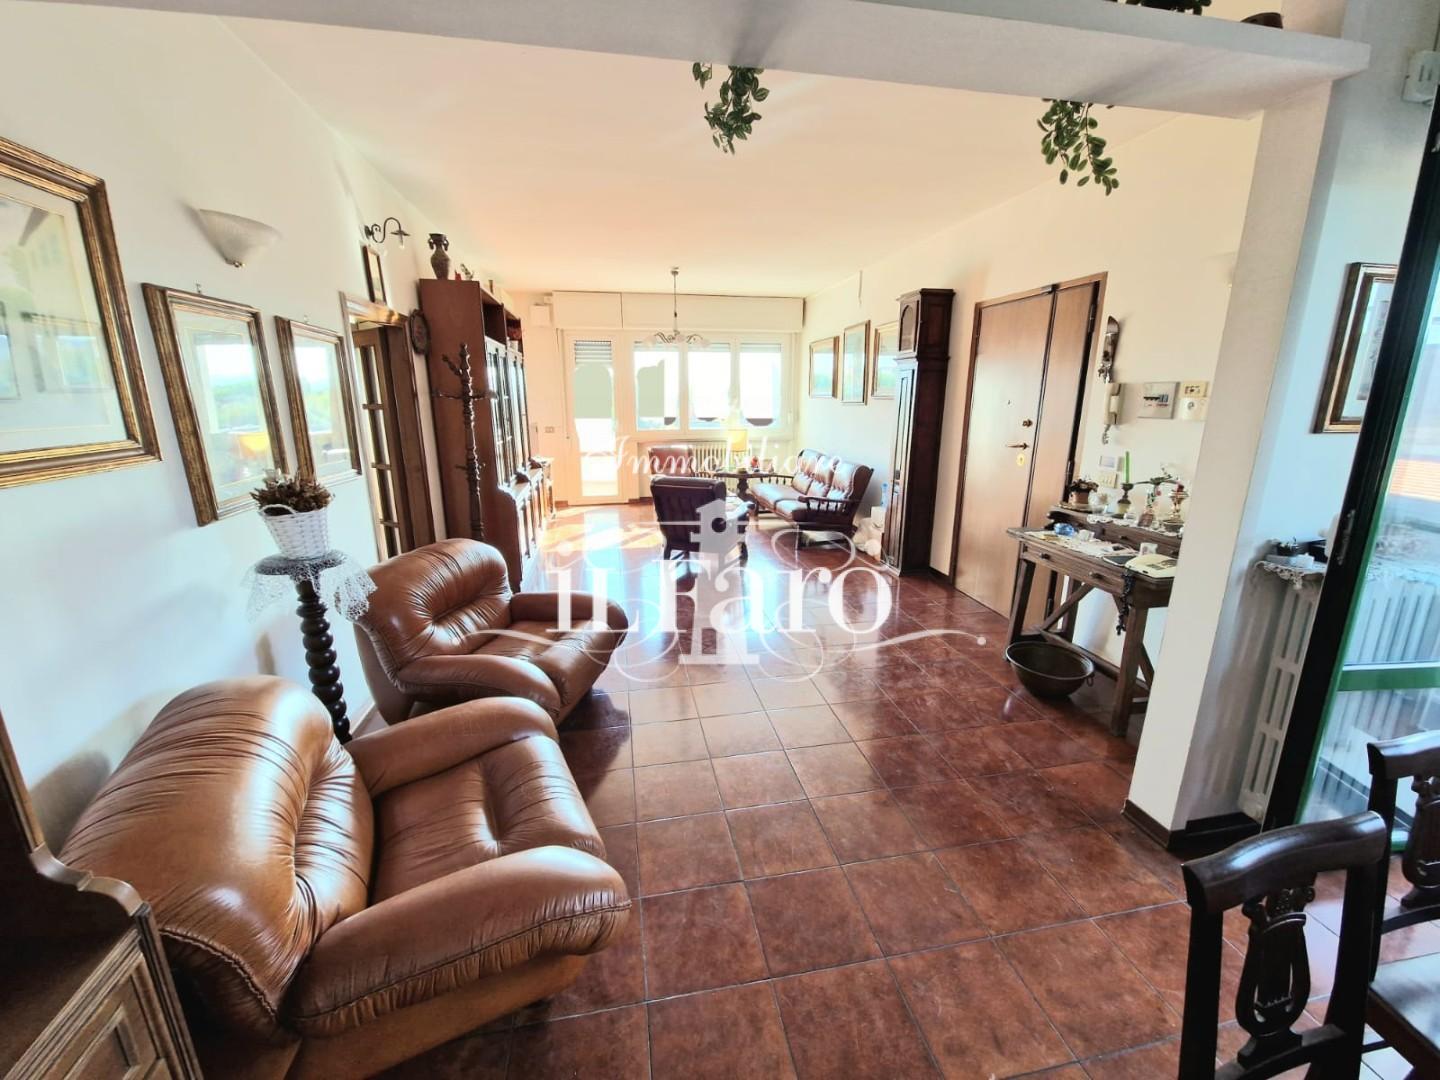 Appartamento in vendita a Campi Bisenzio, 4 locali, prezzo € 260.000 | PortaleAgenzieImmobiliari.it